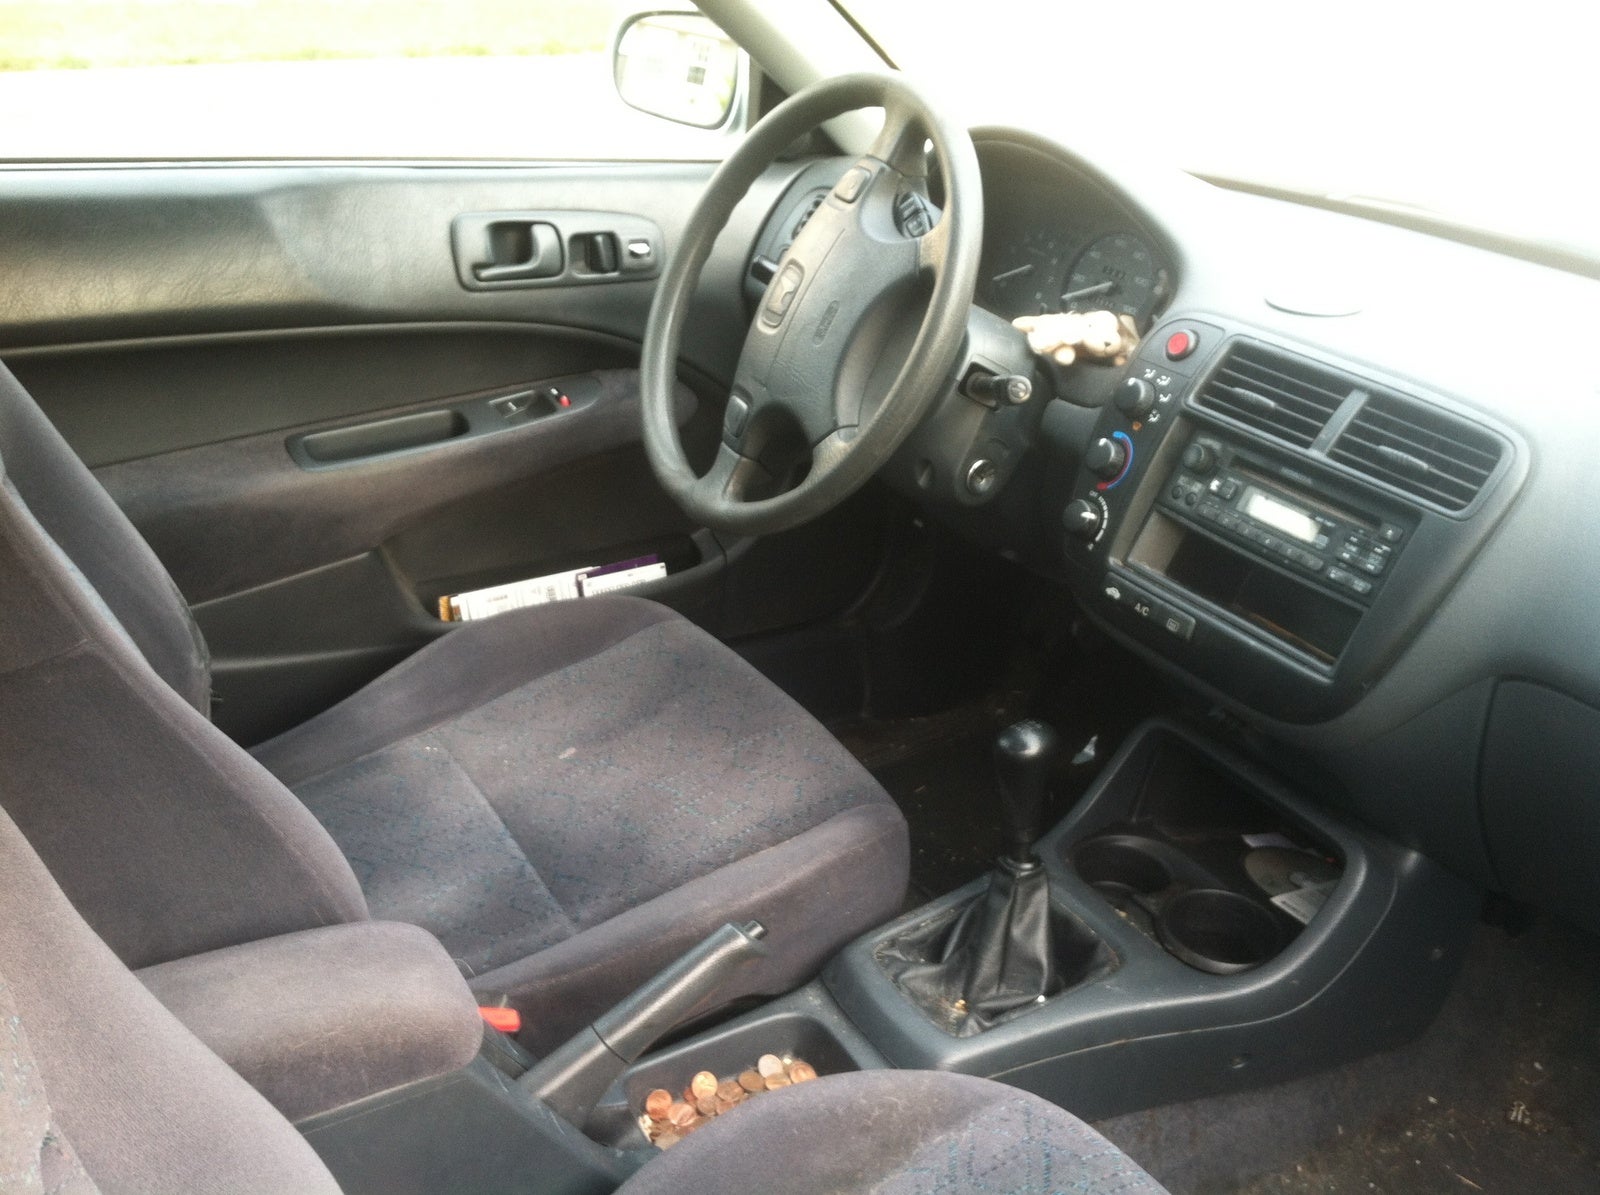 2000 Honda Civic - Interior Pictures - CarGurus
 Honda Civic 2000 Modified Interior